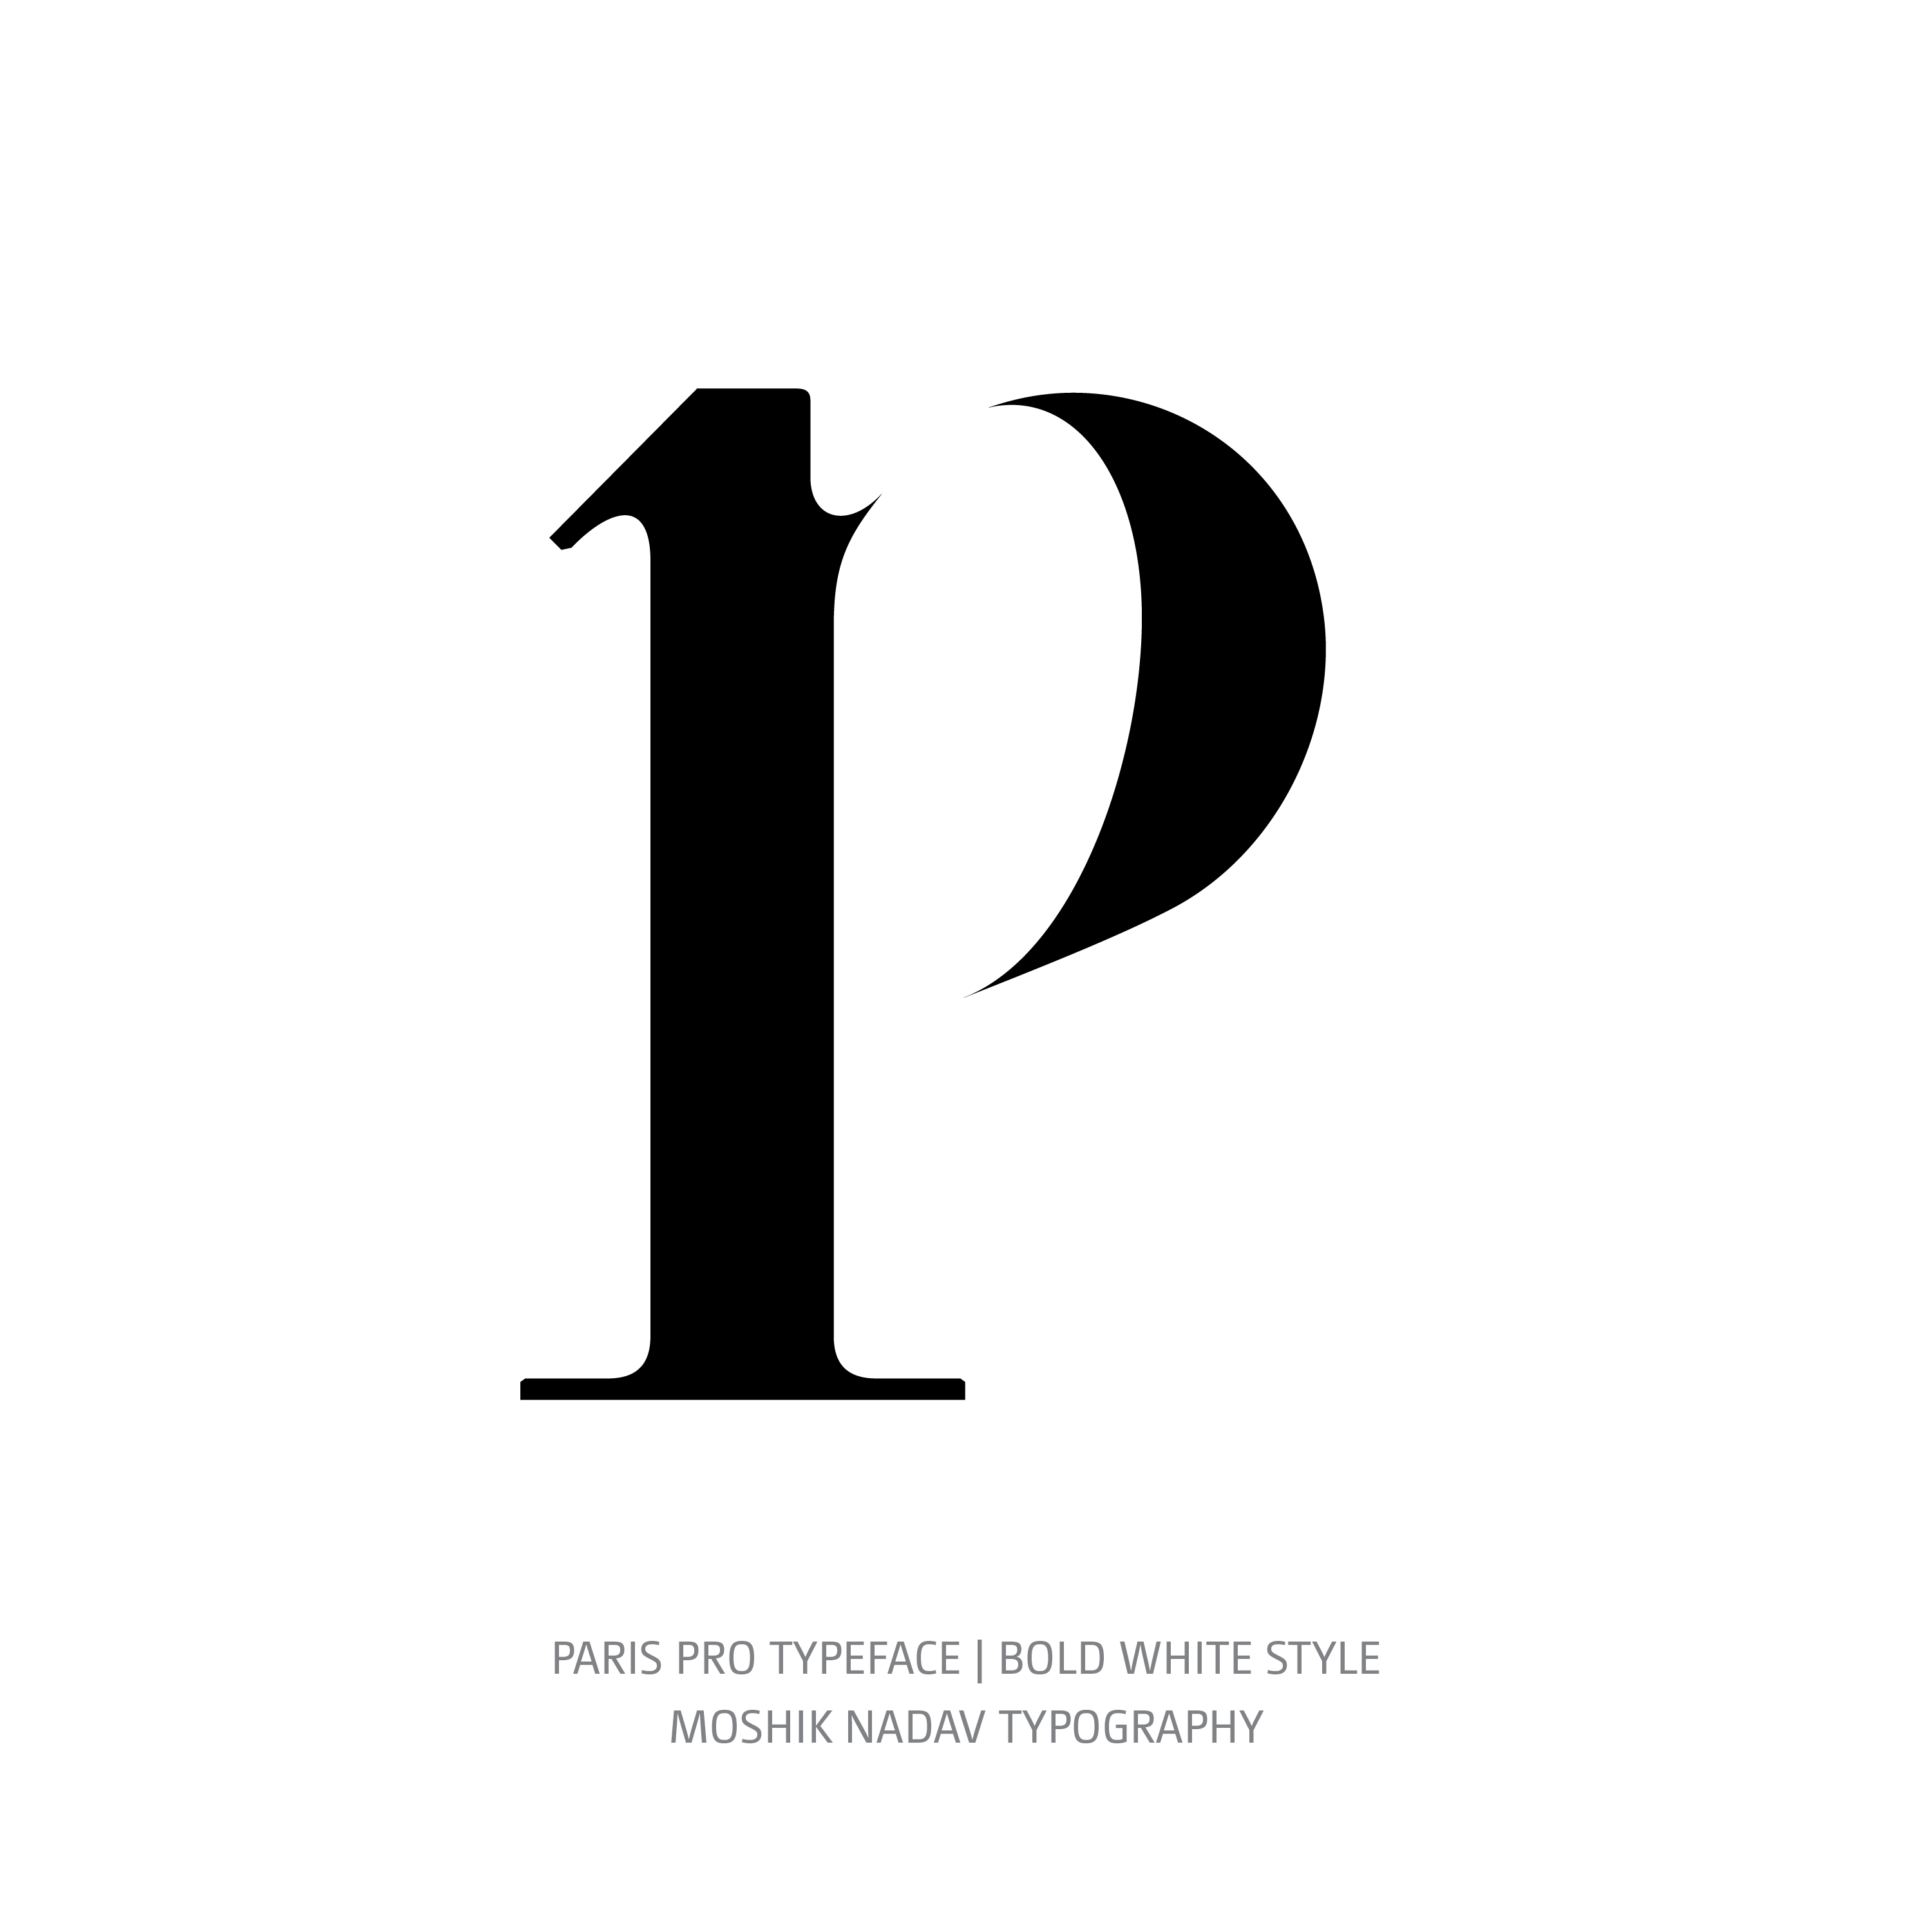 Paris Pro Typeface Bold White p